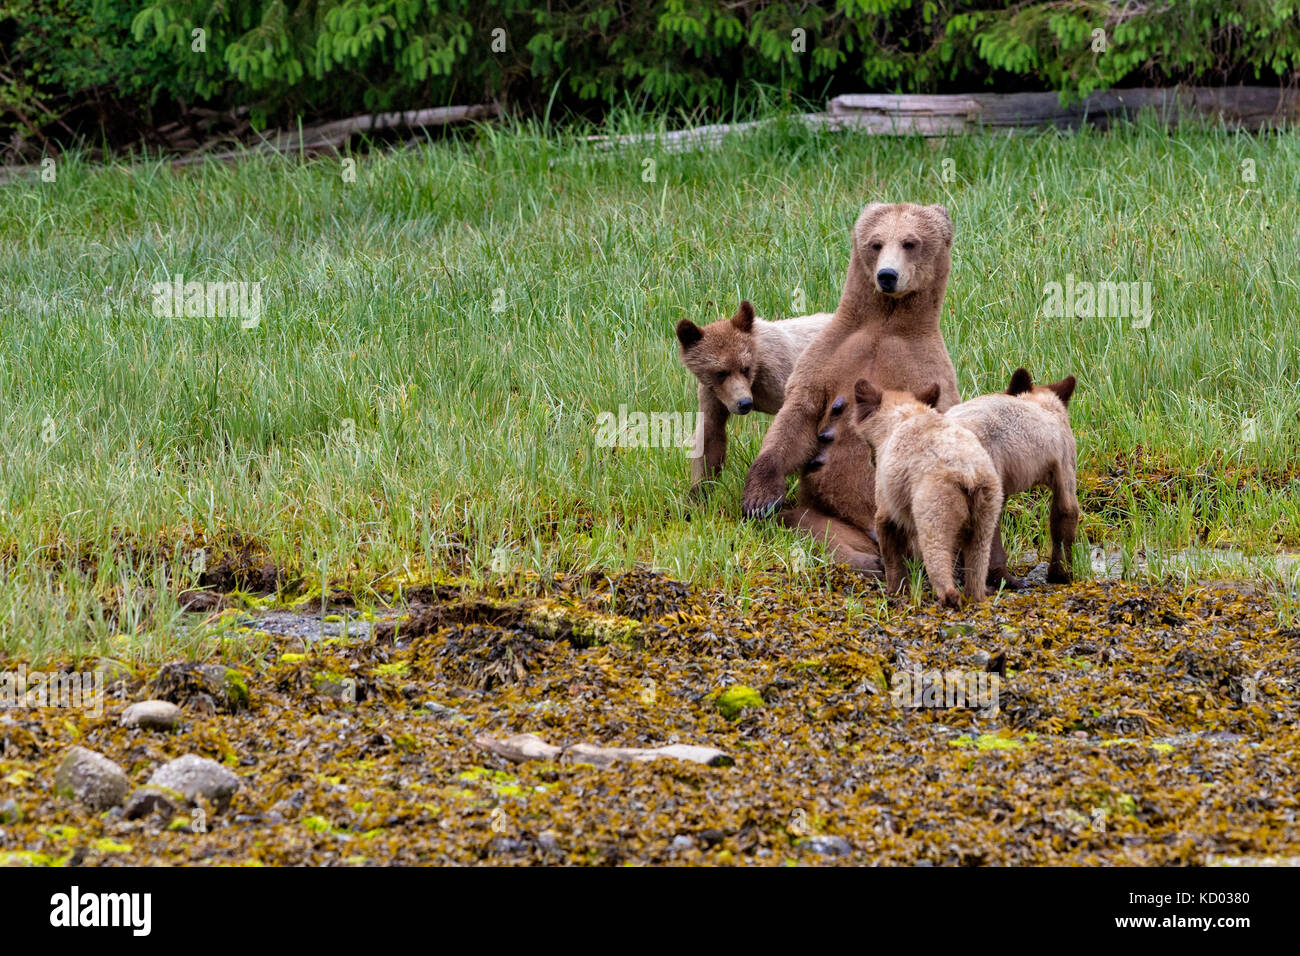 Orso grizzly mom allattava il Cubs in gelndale cove, British Columbia, Canada. Foto Stock